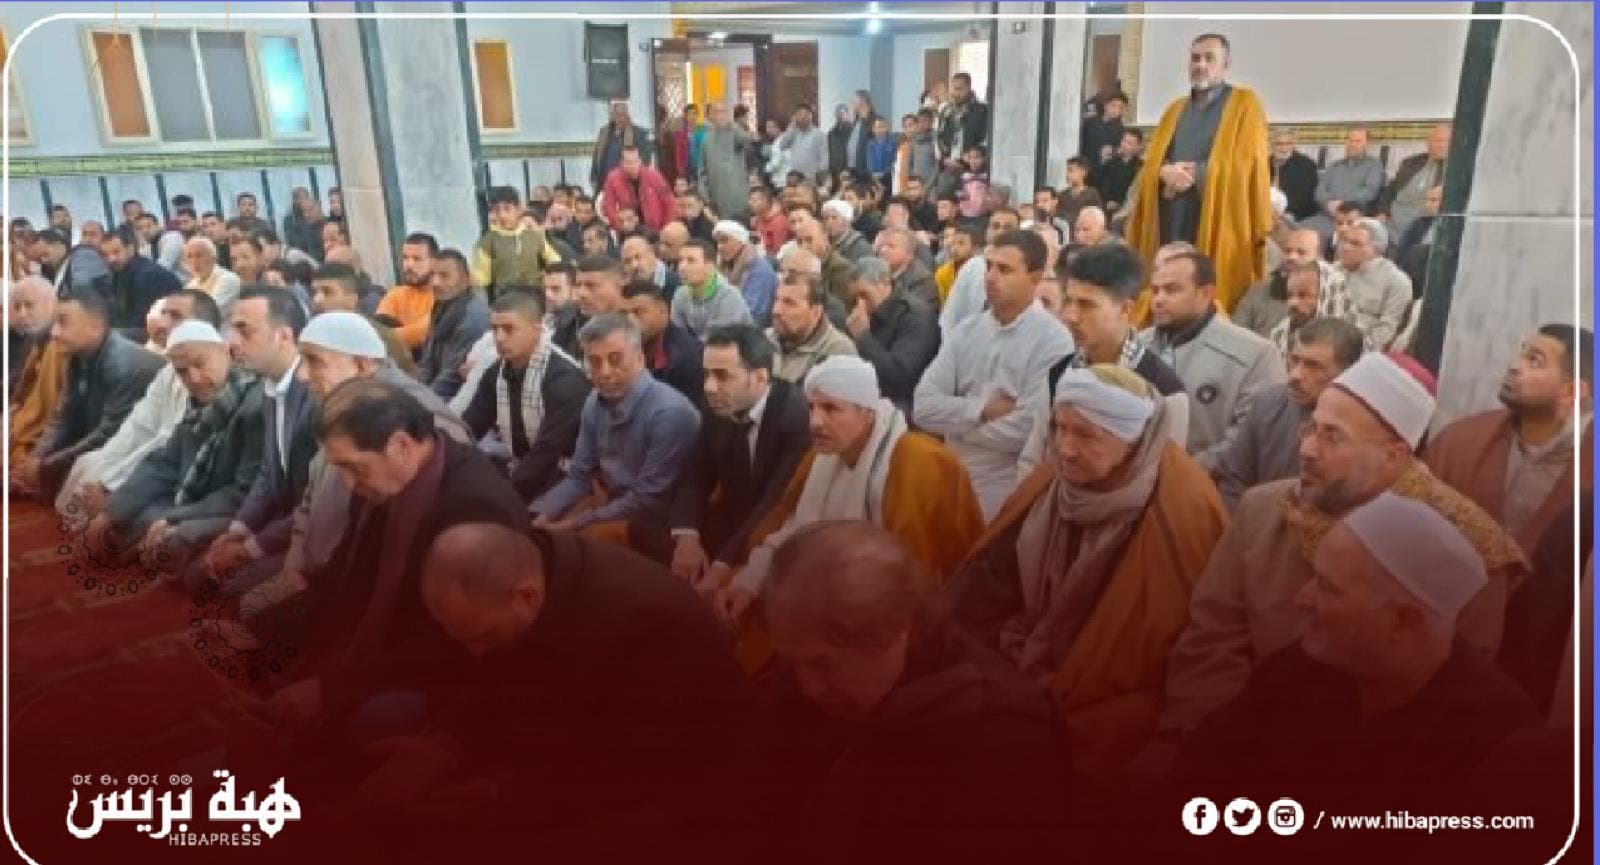 Le harcèlement des fidèles par la mendicité et la collecte de dons s'est multiplié dans les mosquées italiennes